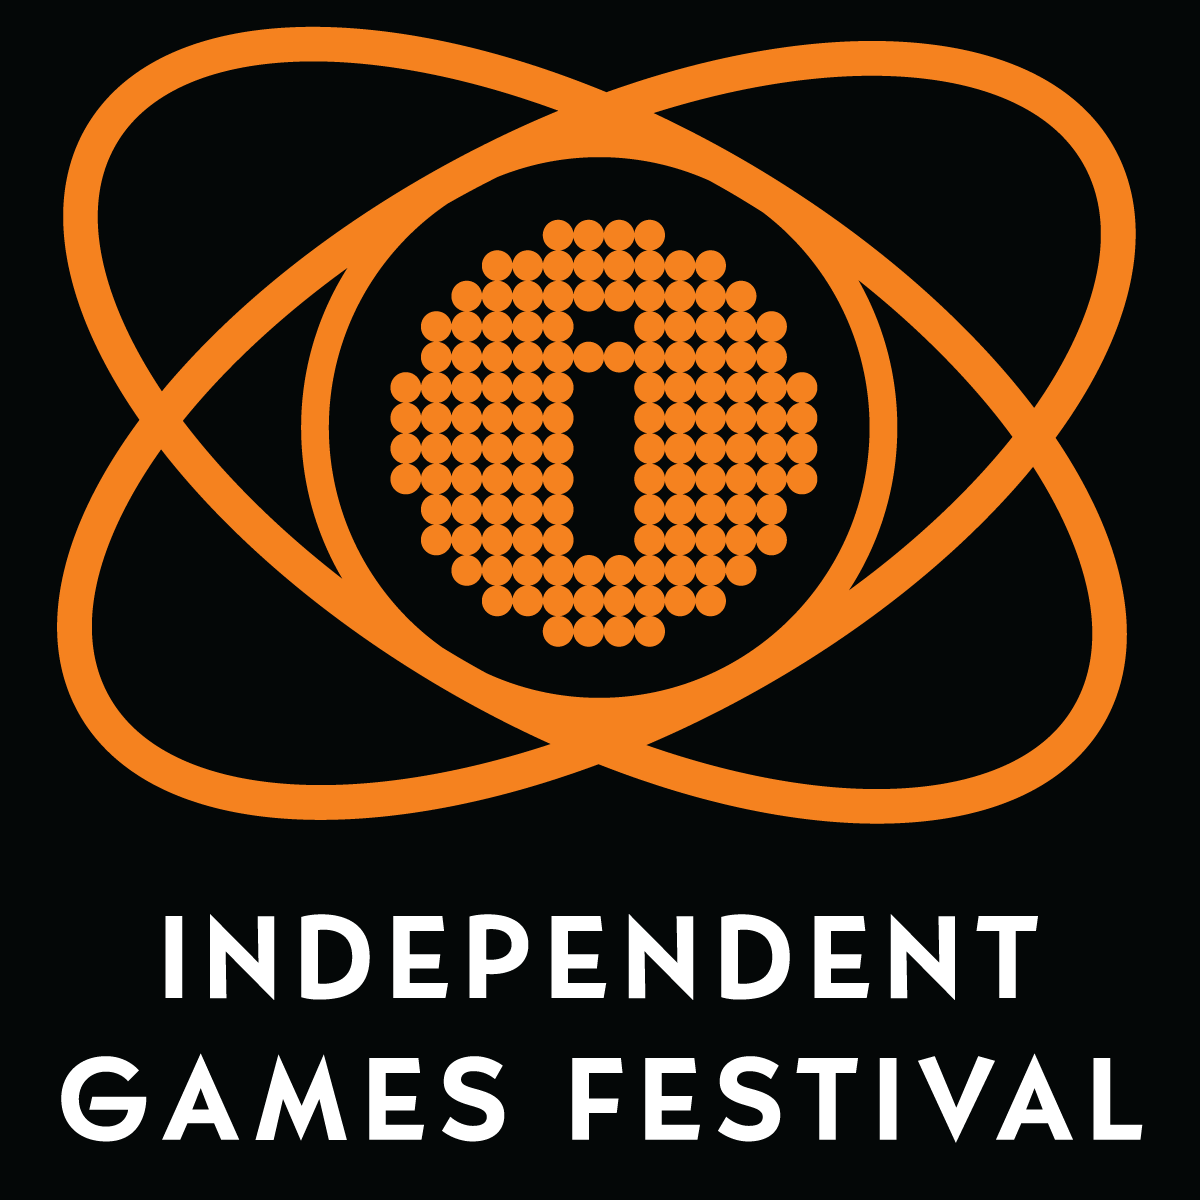 Independent Games Festival logo